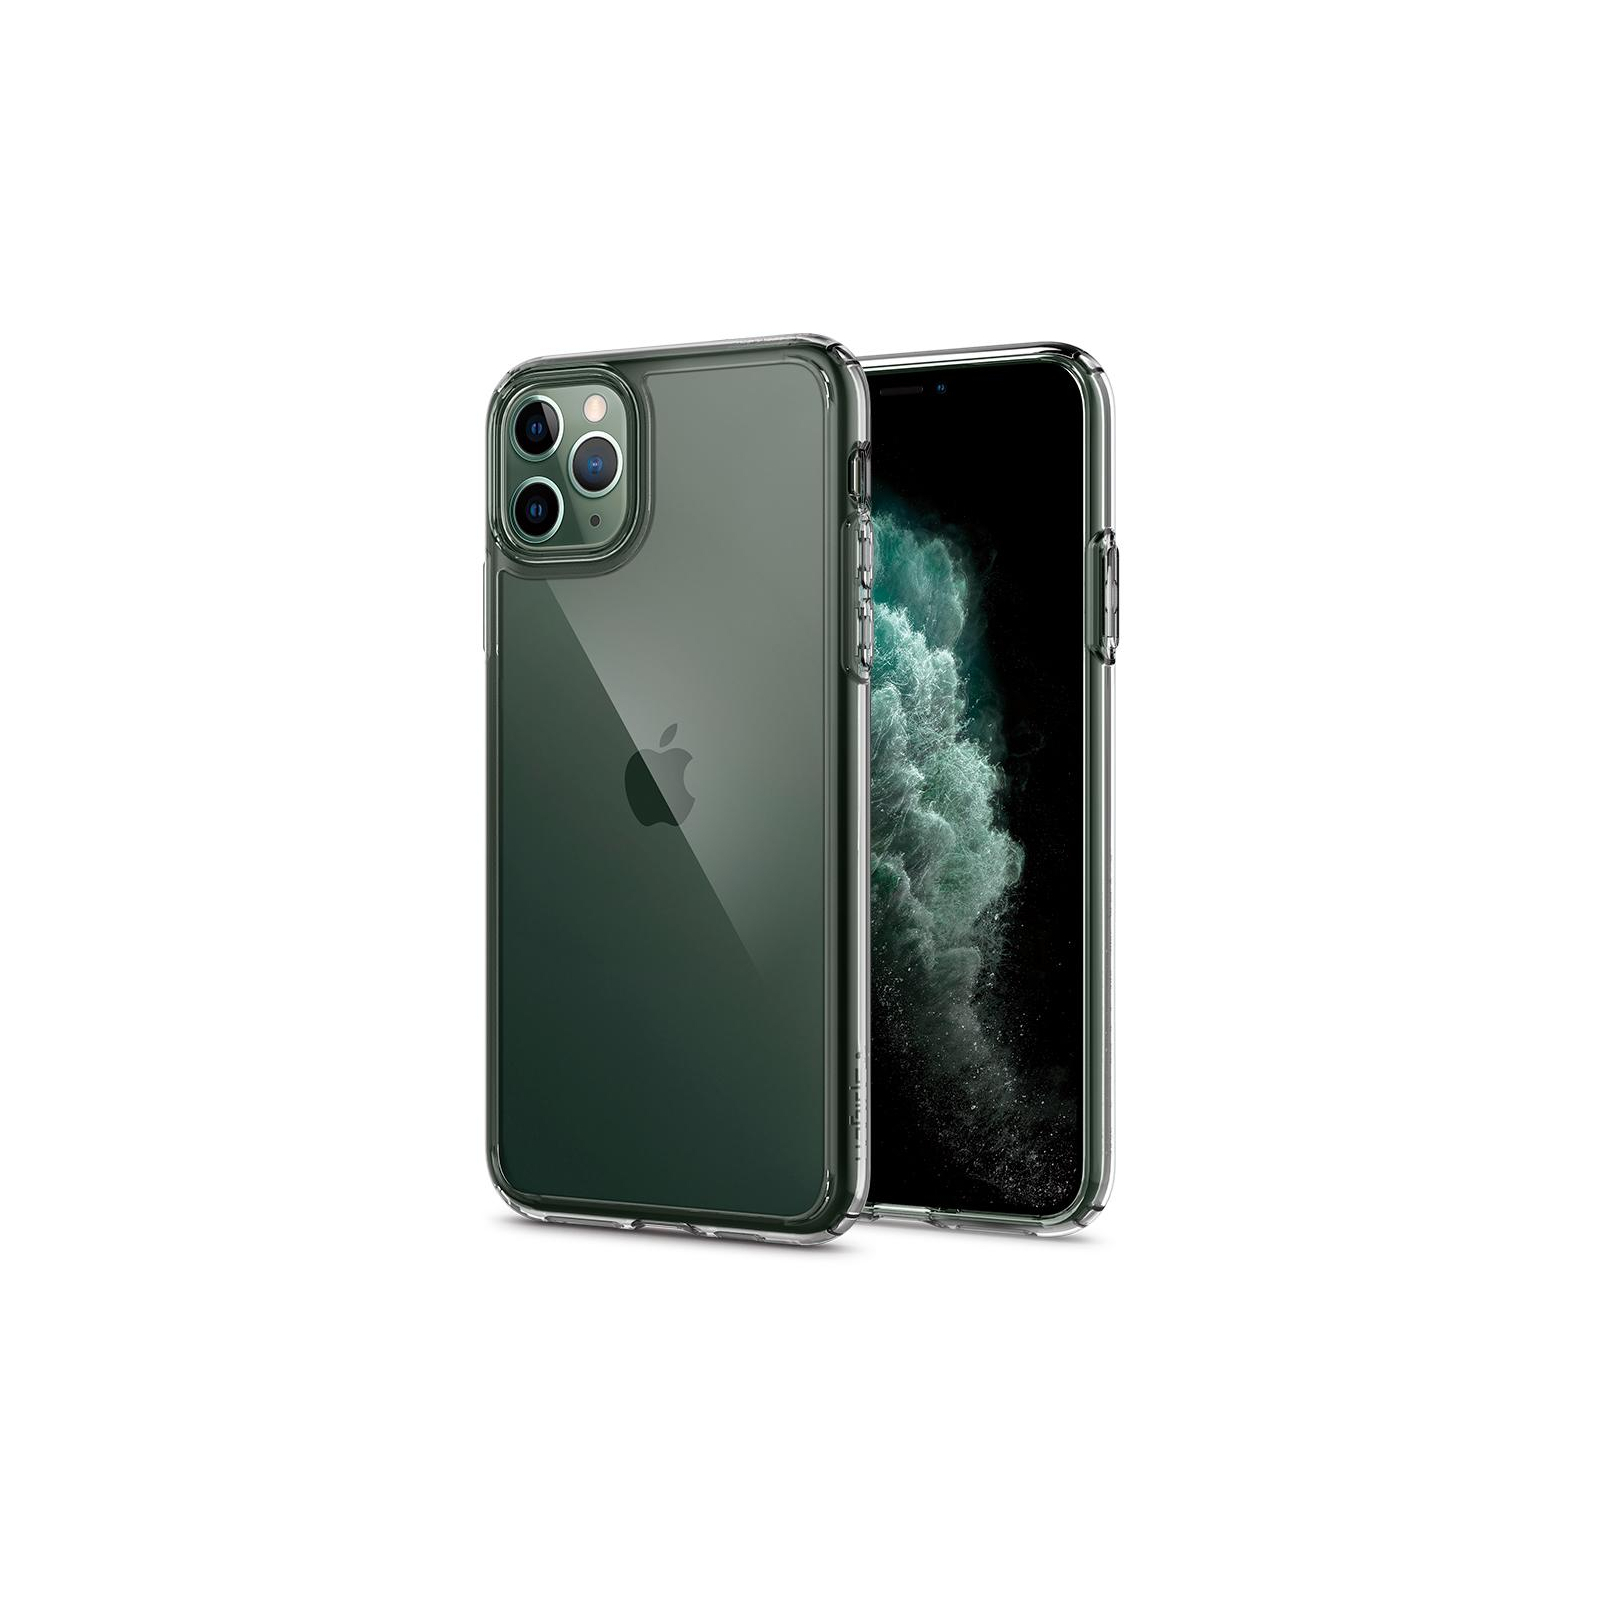 Чехол для мобильного телефона Spigen iPhone 11 Pro Max Ultra Hybrid, Crystal Clear (075CS27135) изображение 9